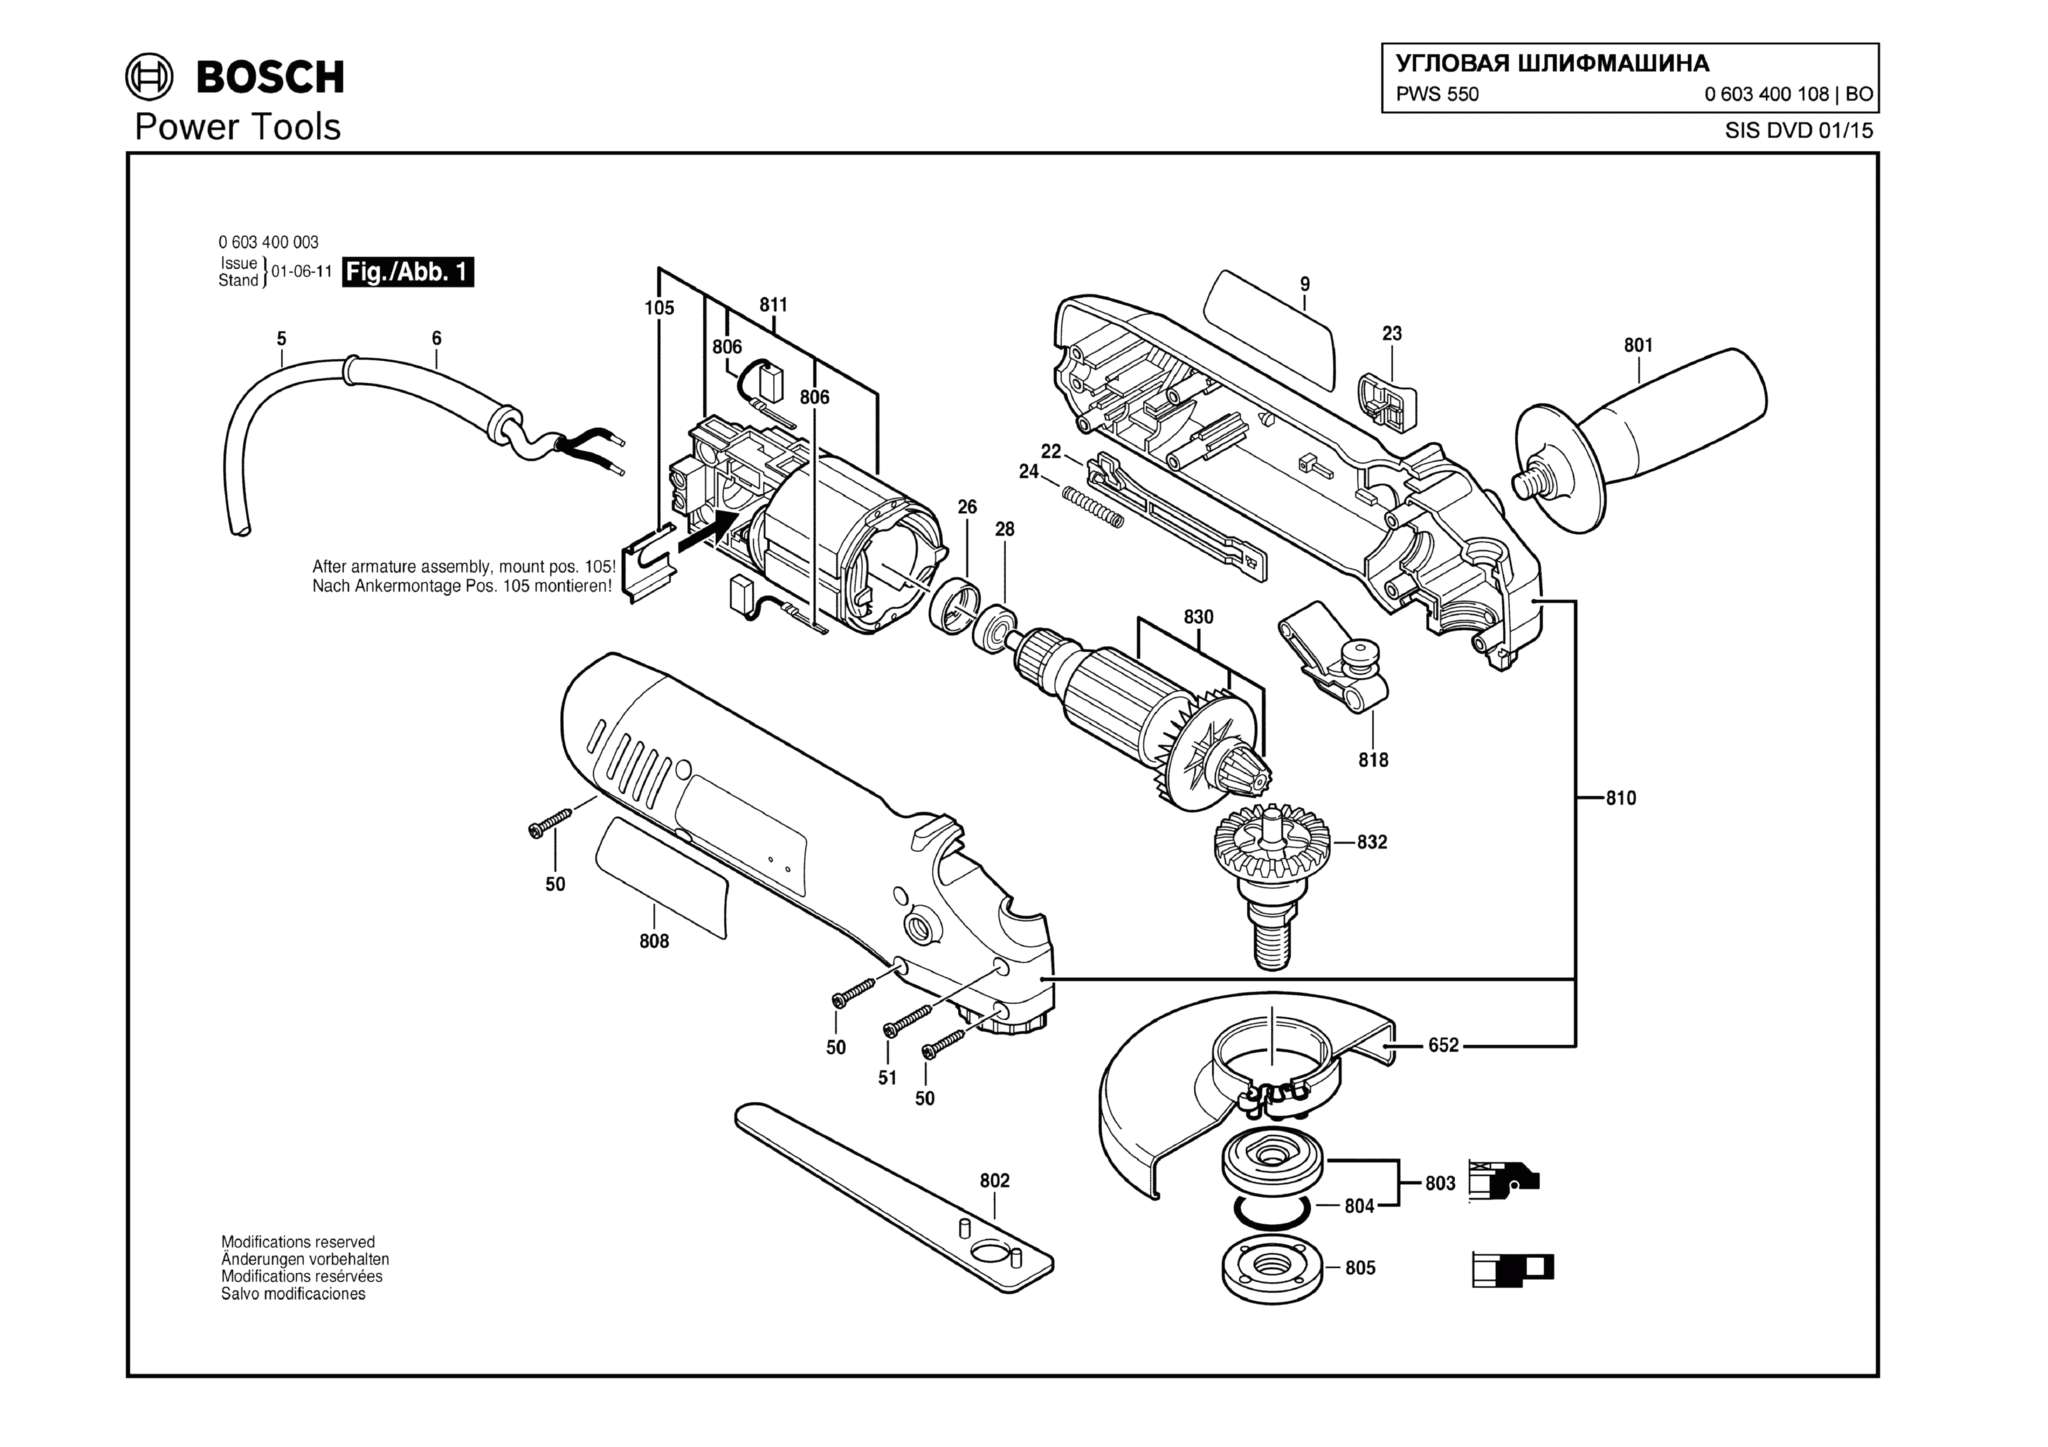 Запчасти, схема и деталировка Bosch PWS 550 (ТИП 0603400108)